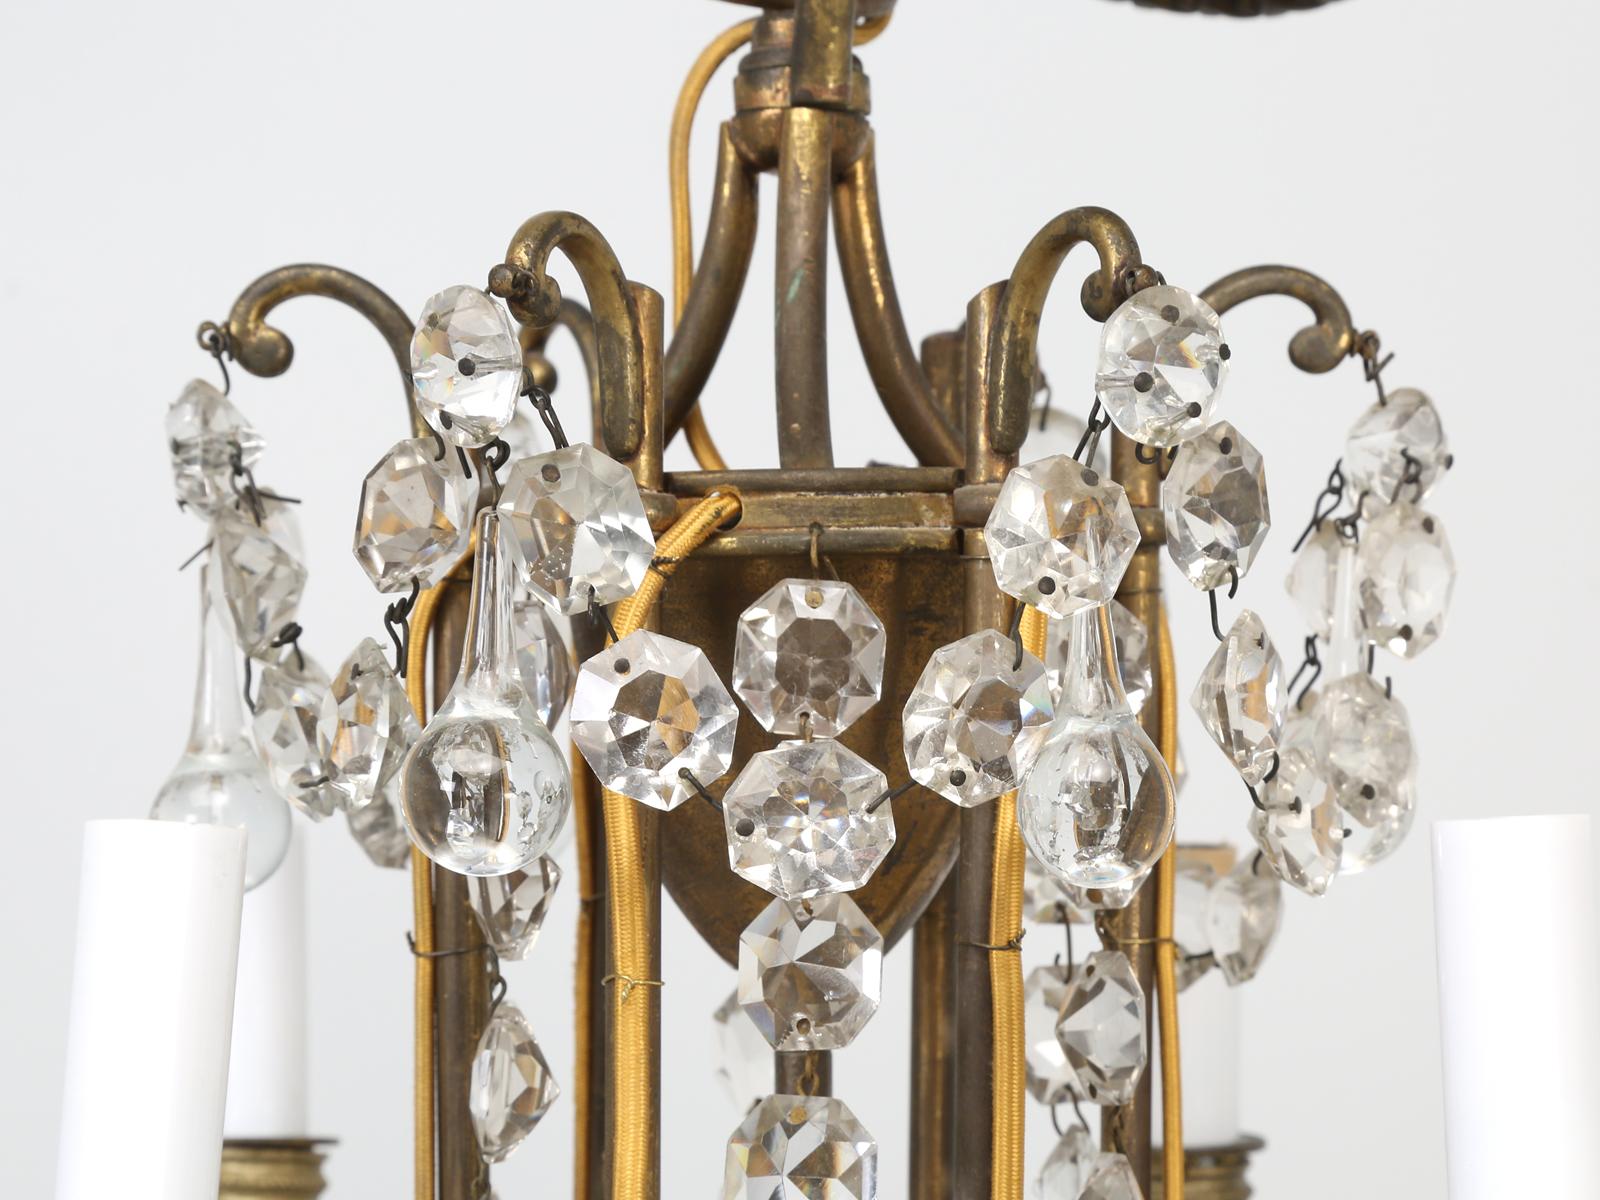 Baccarat ist sicherlich eine der weltweit führenden Manufakturen von feinem Kristall und wurde vor über 250 Jahren gegründet. König Ludwig XV. von Frankreich erteilte 1764 die Erlaubnis, in der Stadt Baccarat eine Glasmanufaktur zu gründen. Die